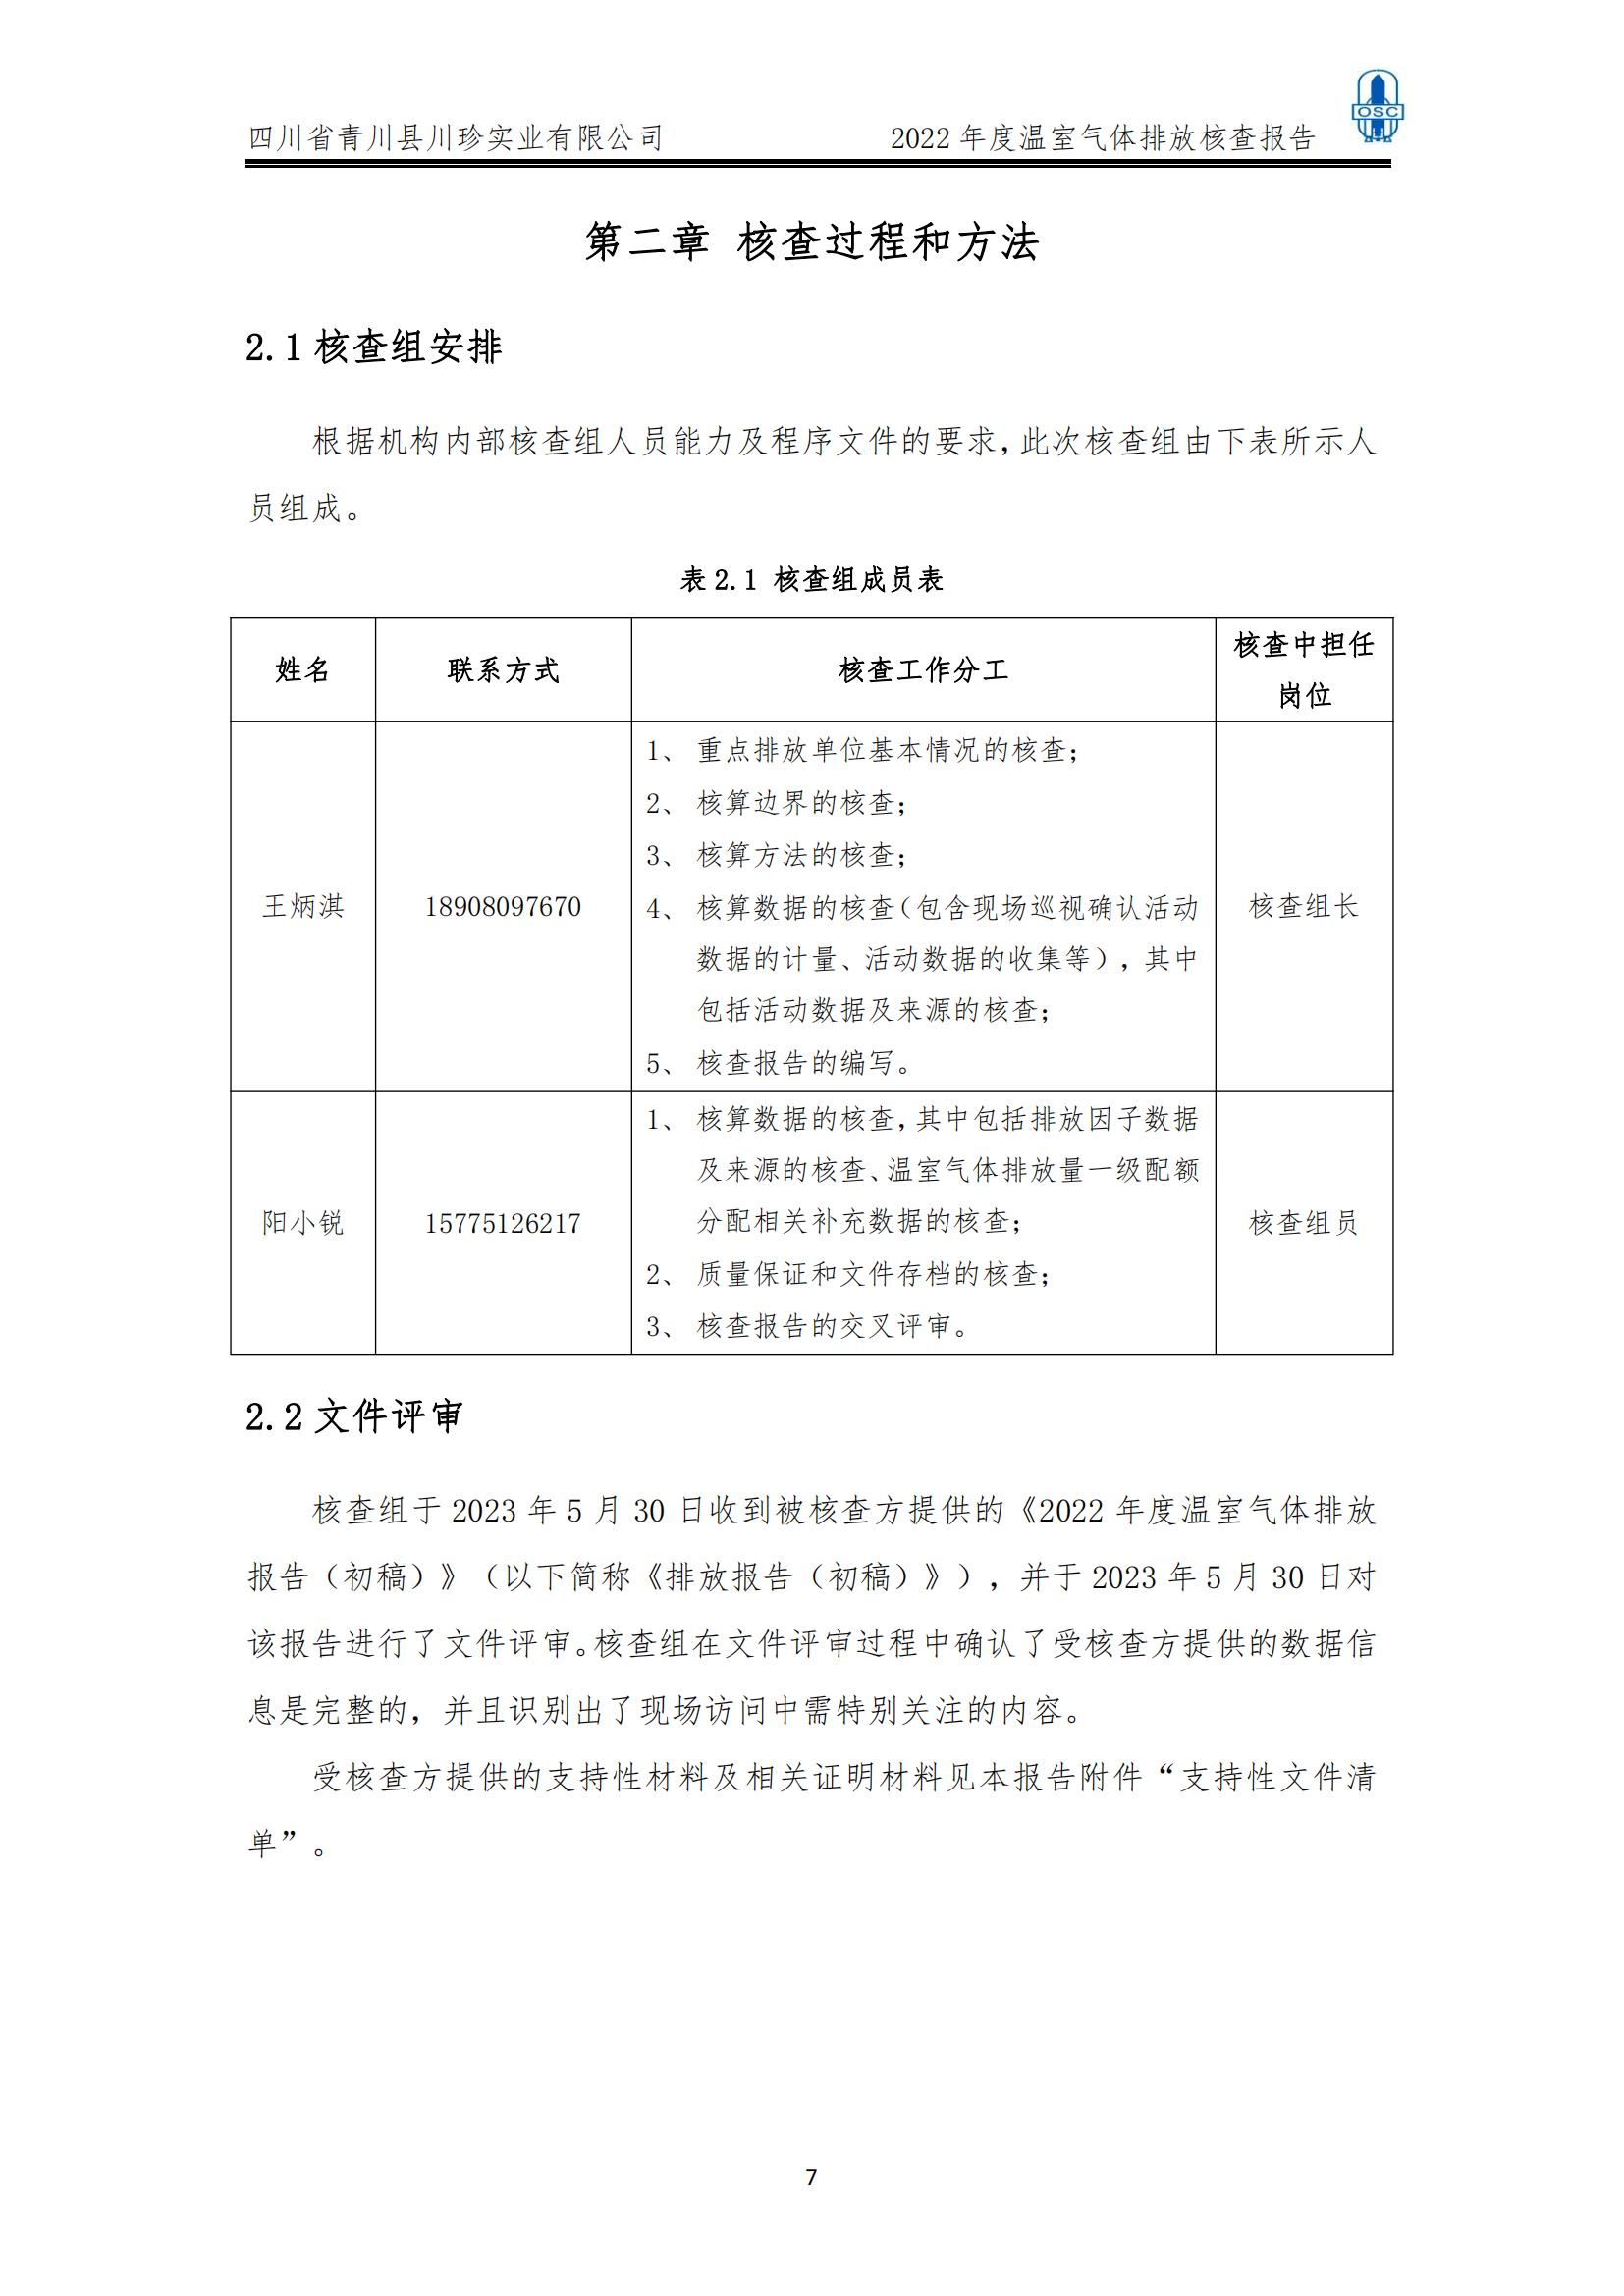 2022年度温室气体核查报告(四川省青川县川珍实业有限公司(图8)